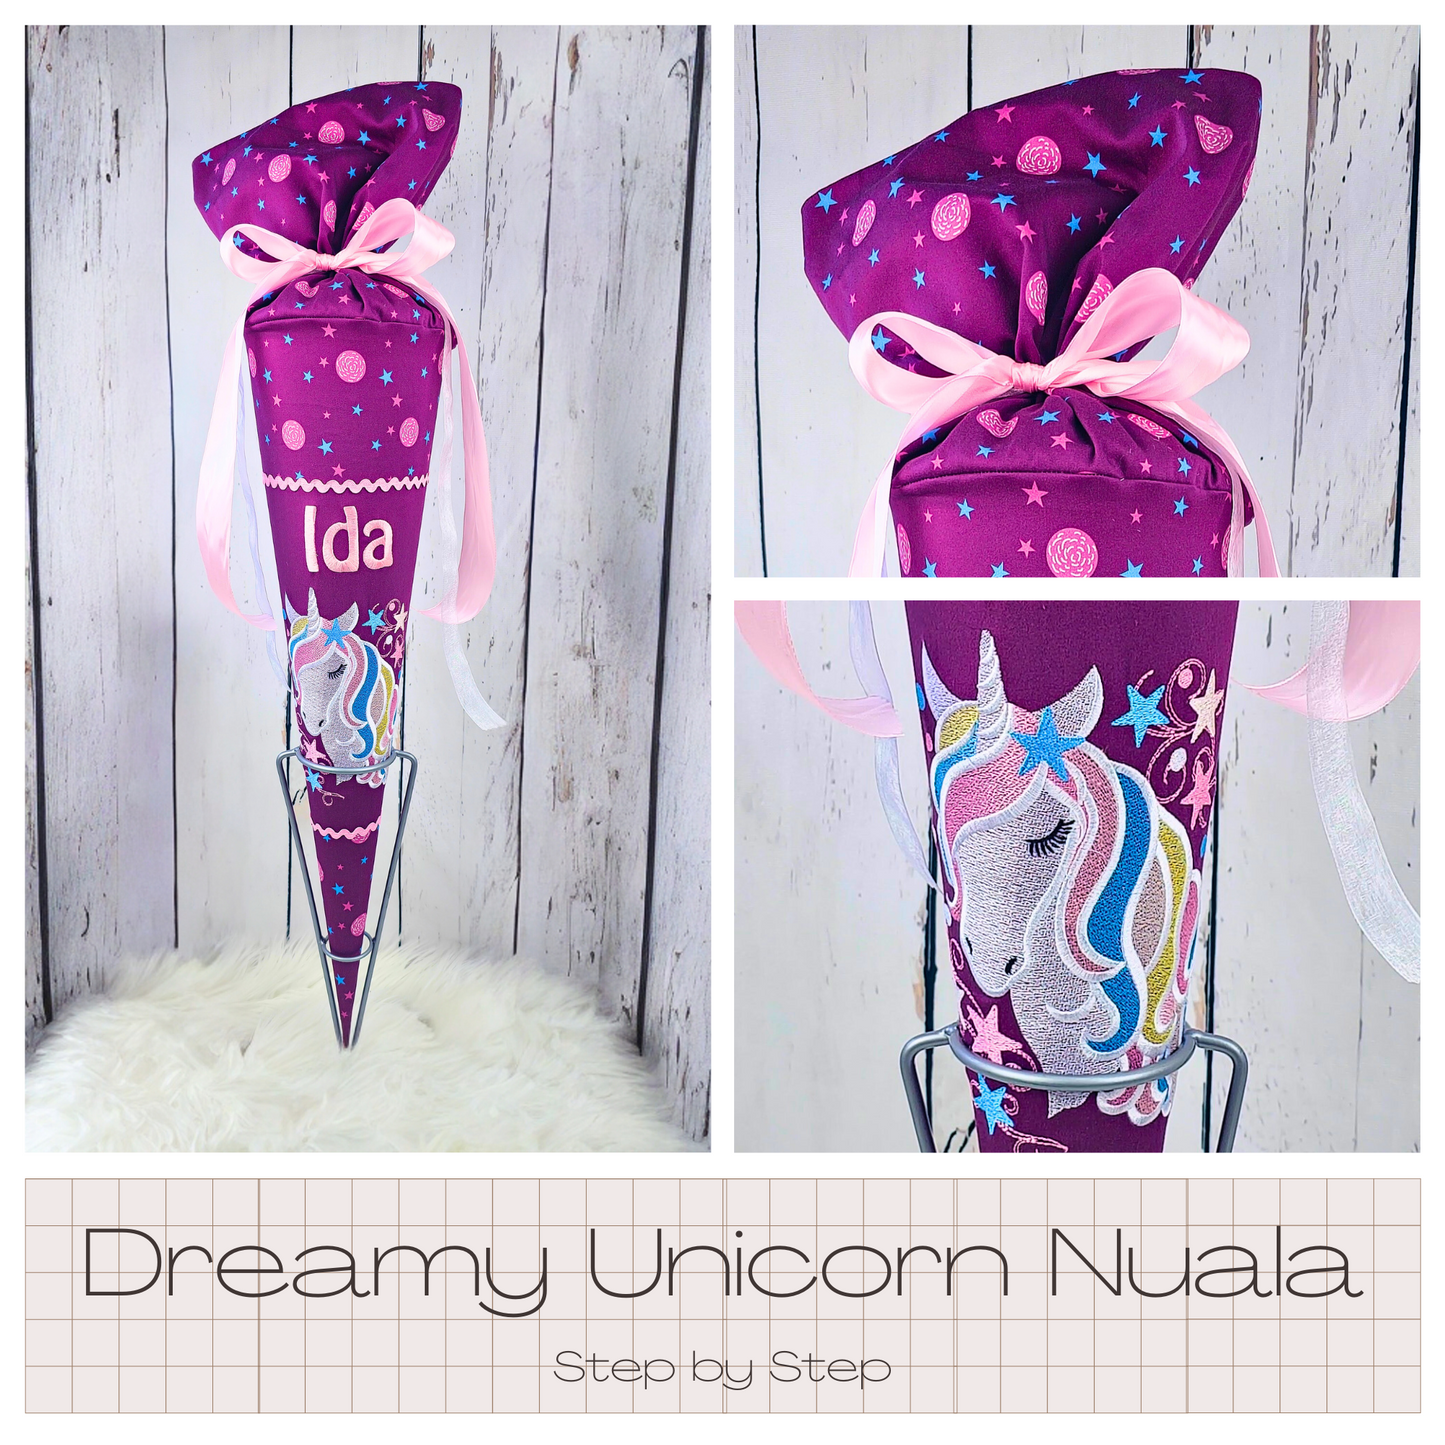 Schultüte passend zum Ranzen Dreamy Unicorn Nuala von Step by Step | verschiedene Applikationen | Einschulung